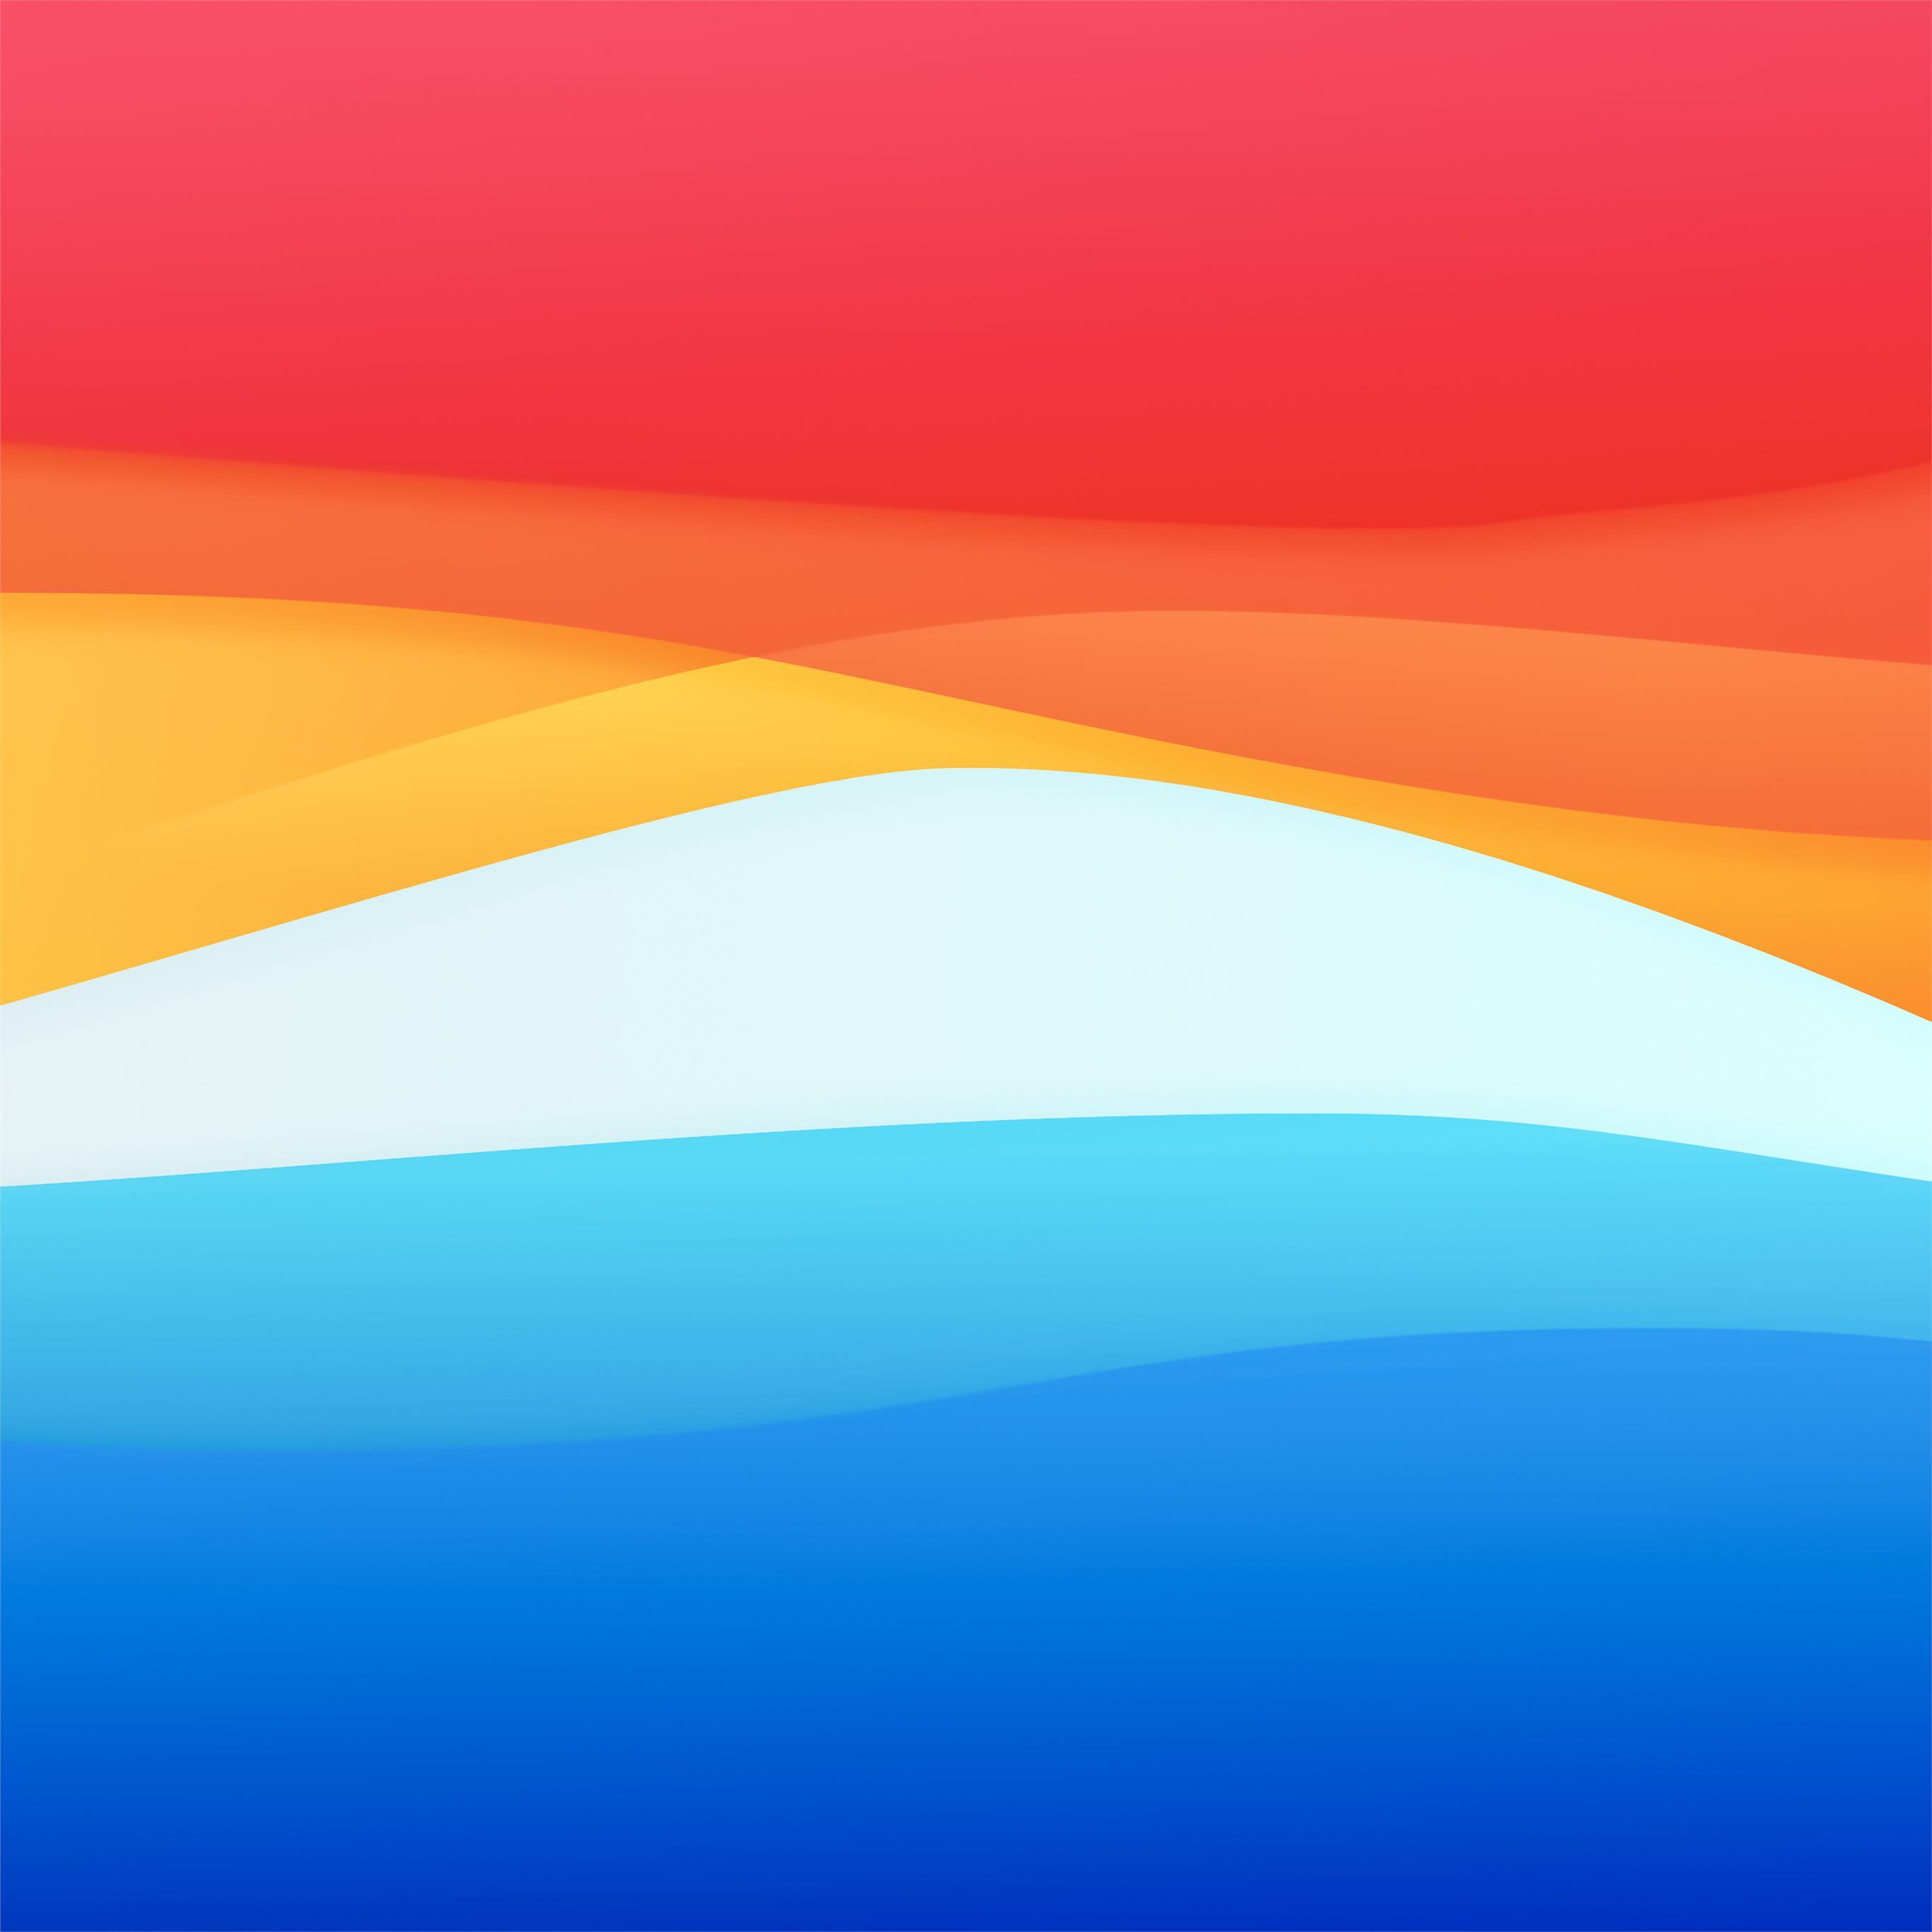 macbook inspire abstract 8k iPad Pro Wallpaper Free Download